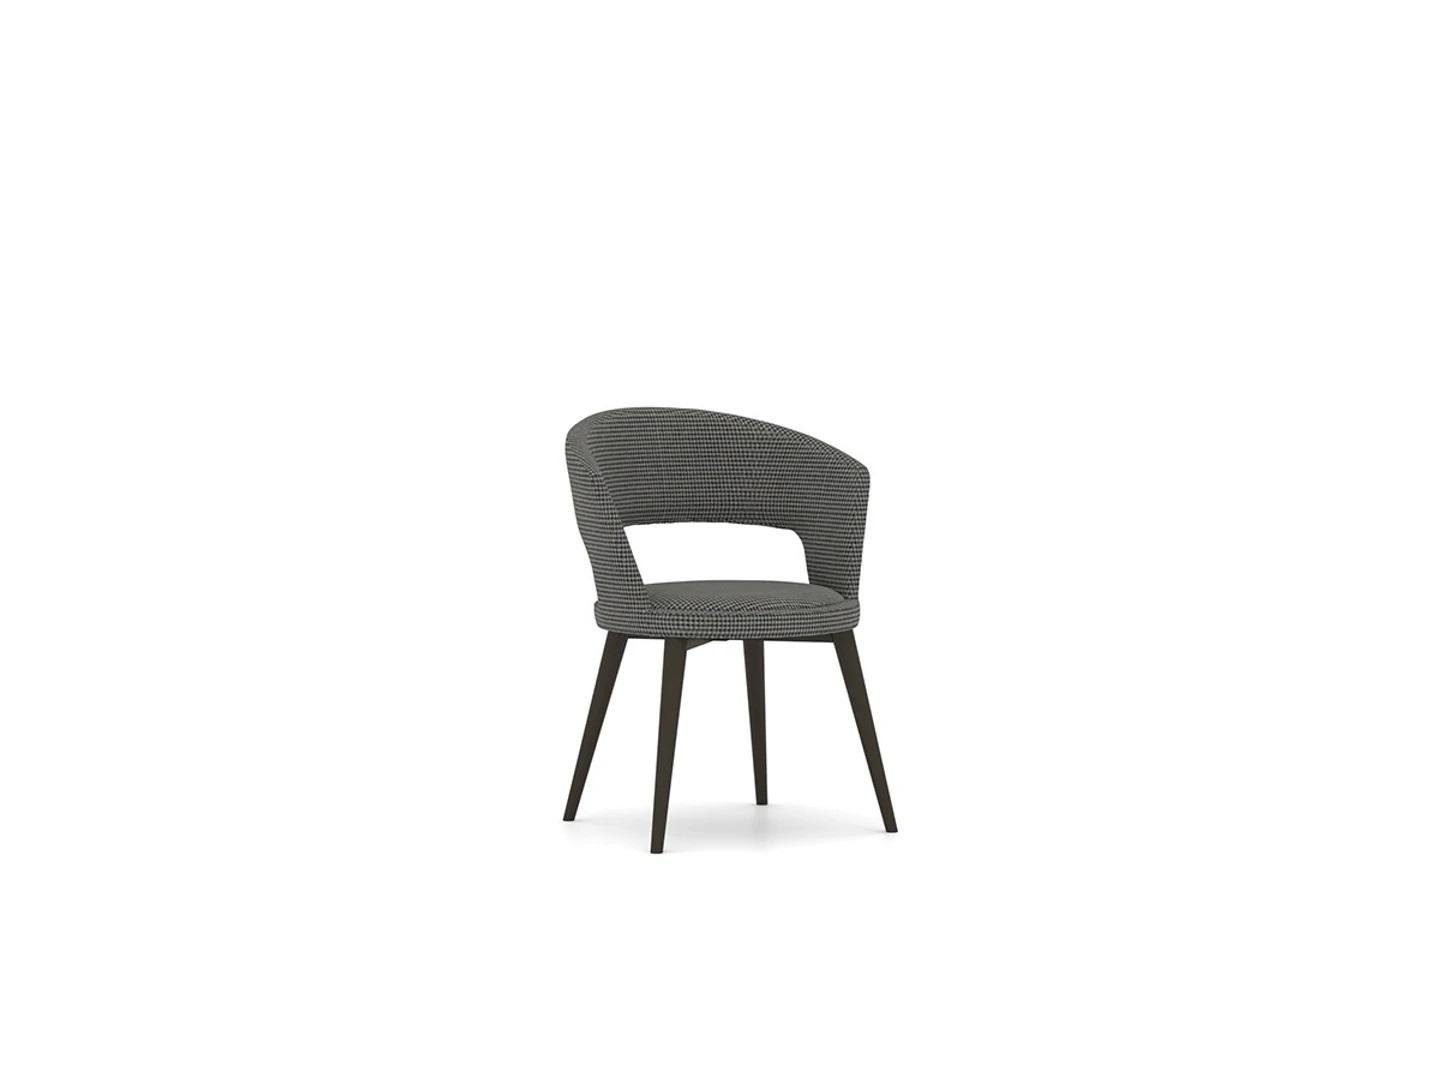 Made Esszimmerstuhl Design JVmoebel Möbel in Stühle Holz Neu St), Einrichtung Esszimmer Stuhl Europa Luxus (1